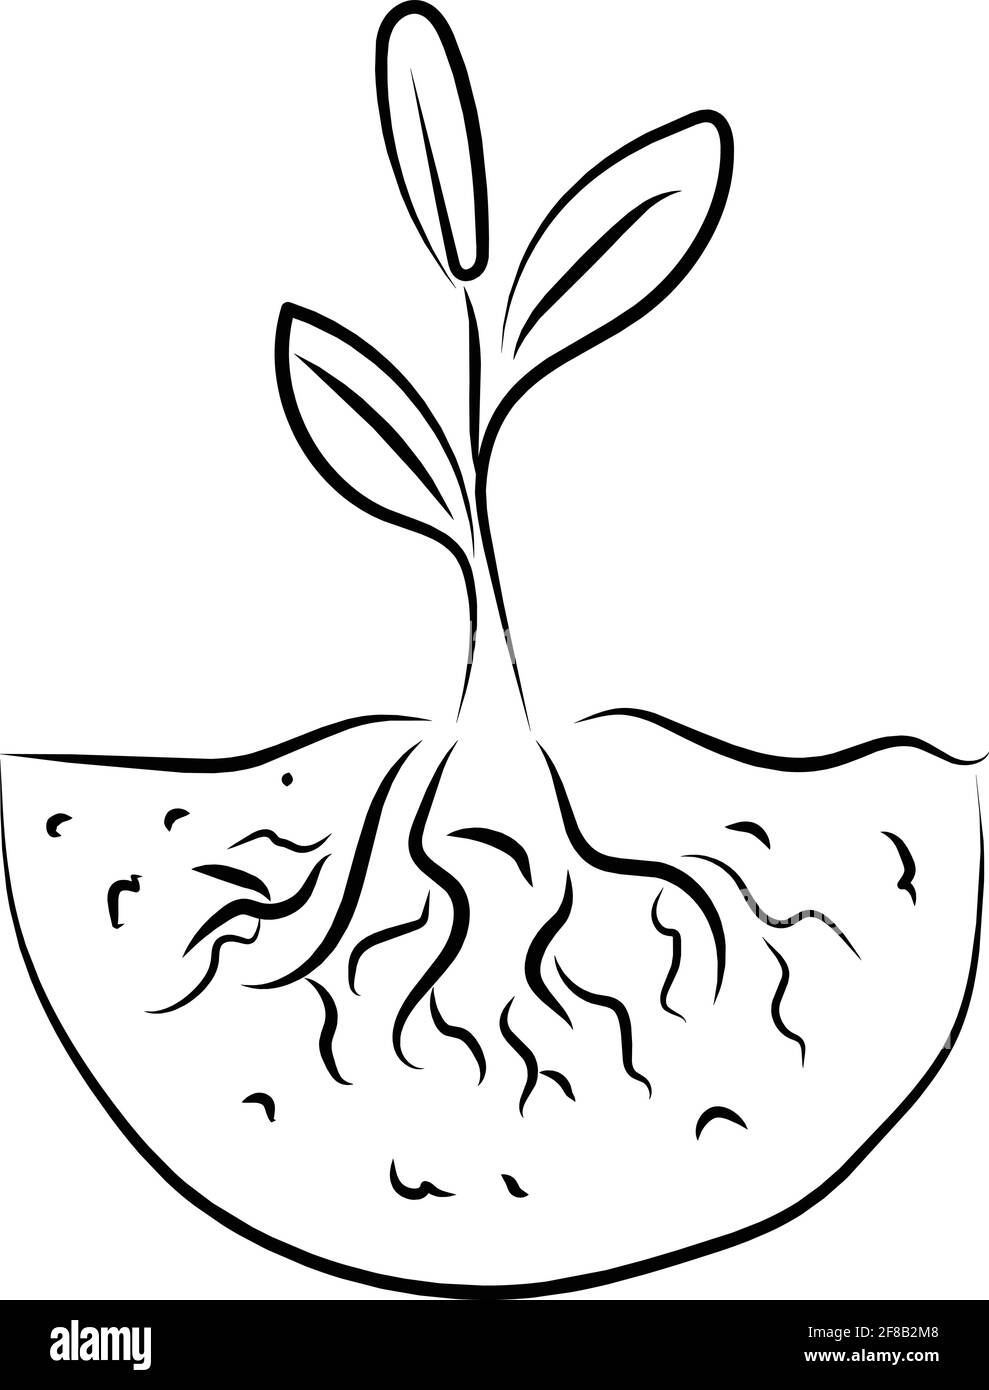 Plante avec une illustration vectorielle de dessin de ligne noire de racines Illustration de Vecteur